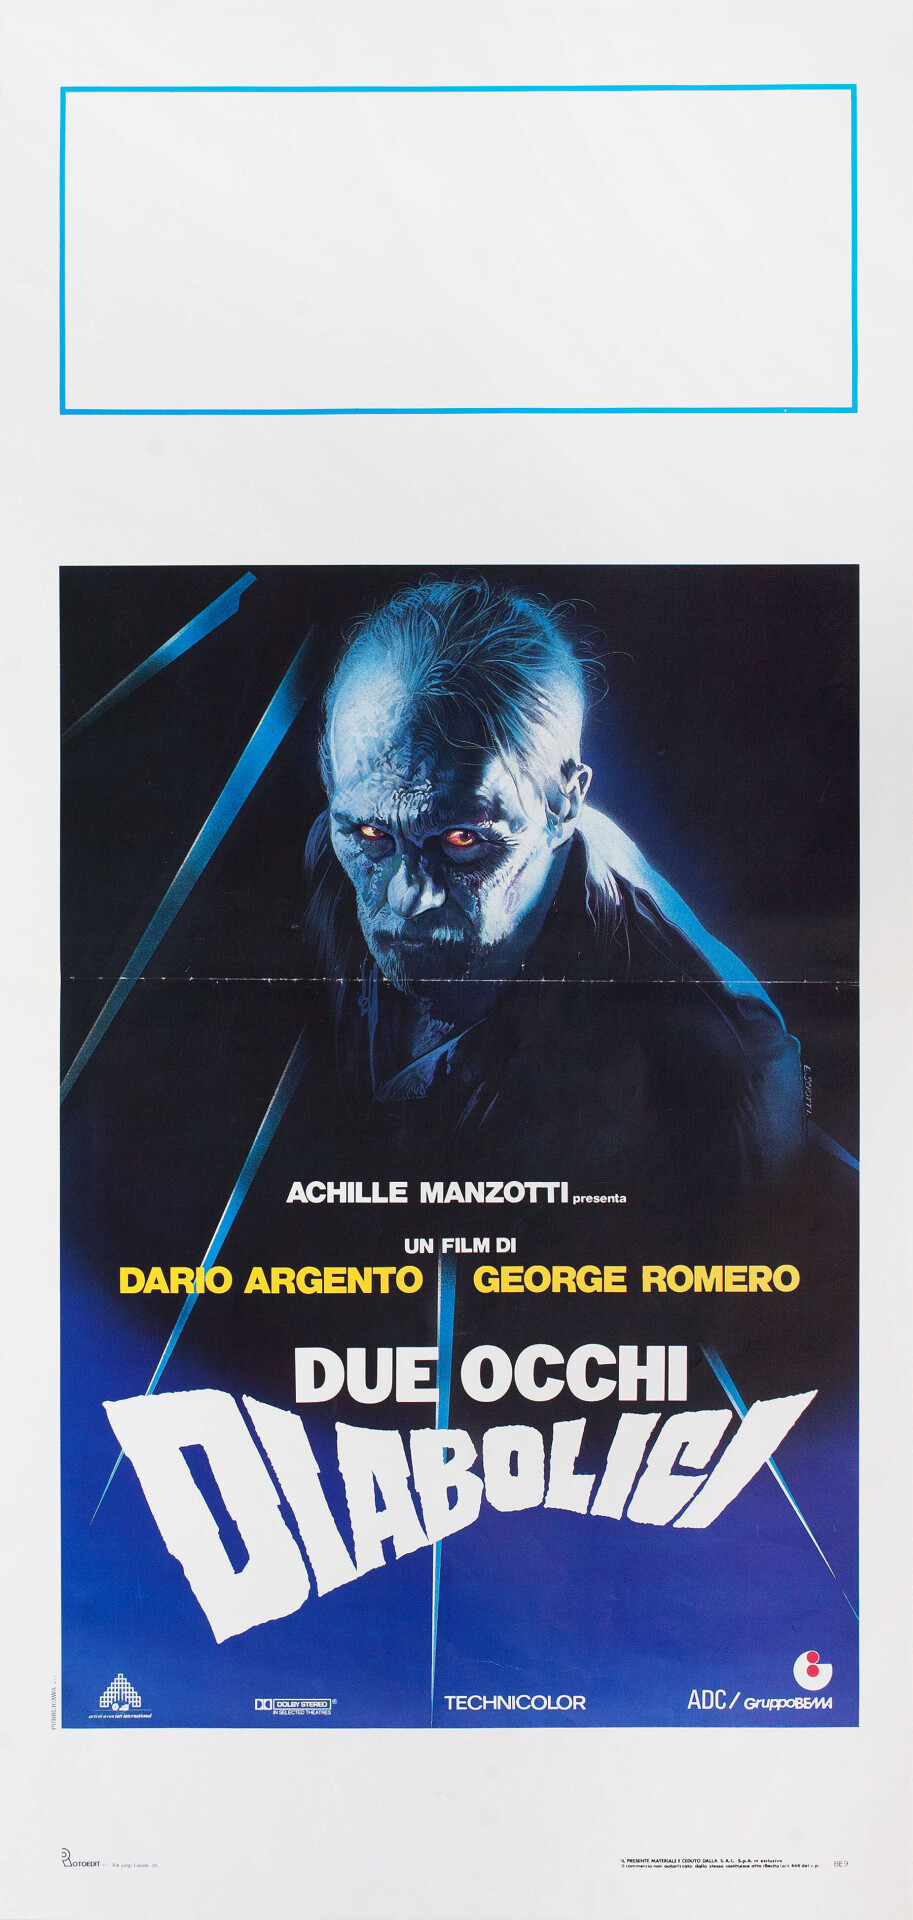 Два злобных глаза (Two Evil Eyes, 1990), режиссёр Дарио Ардженто, итальянский постер к фильму, автор Энцо Скиотти (ужасы, 1990 год)